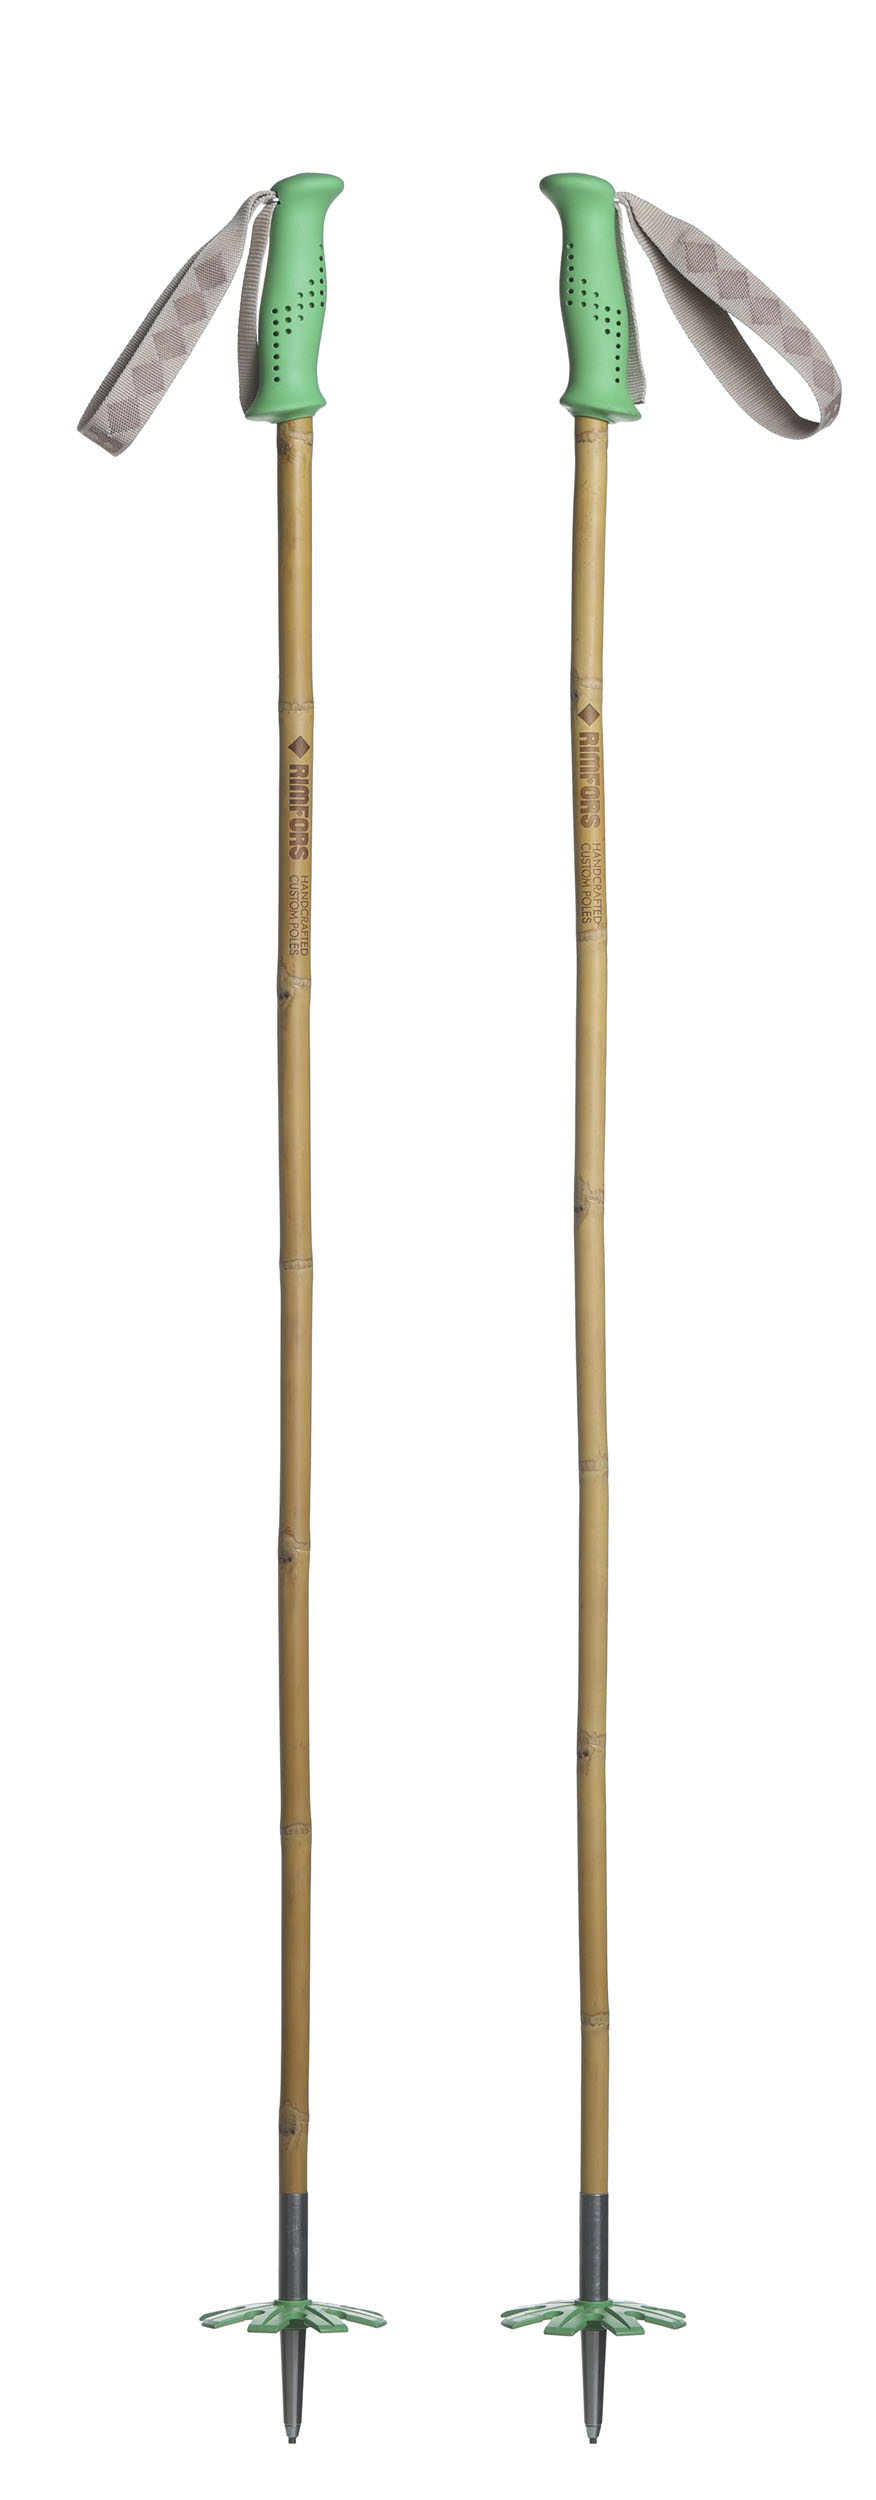 Bambustavar med gröna handtag och pudertrugor (100 mm).